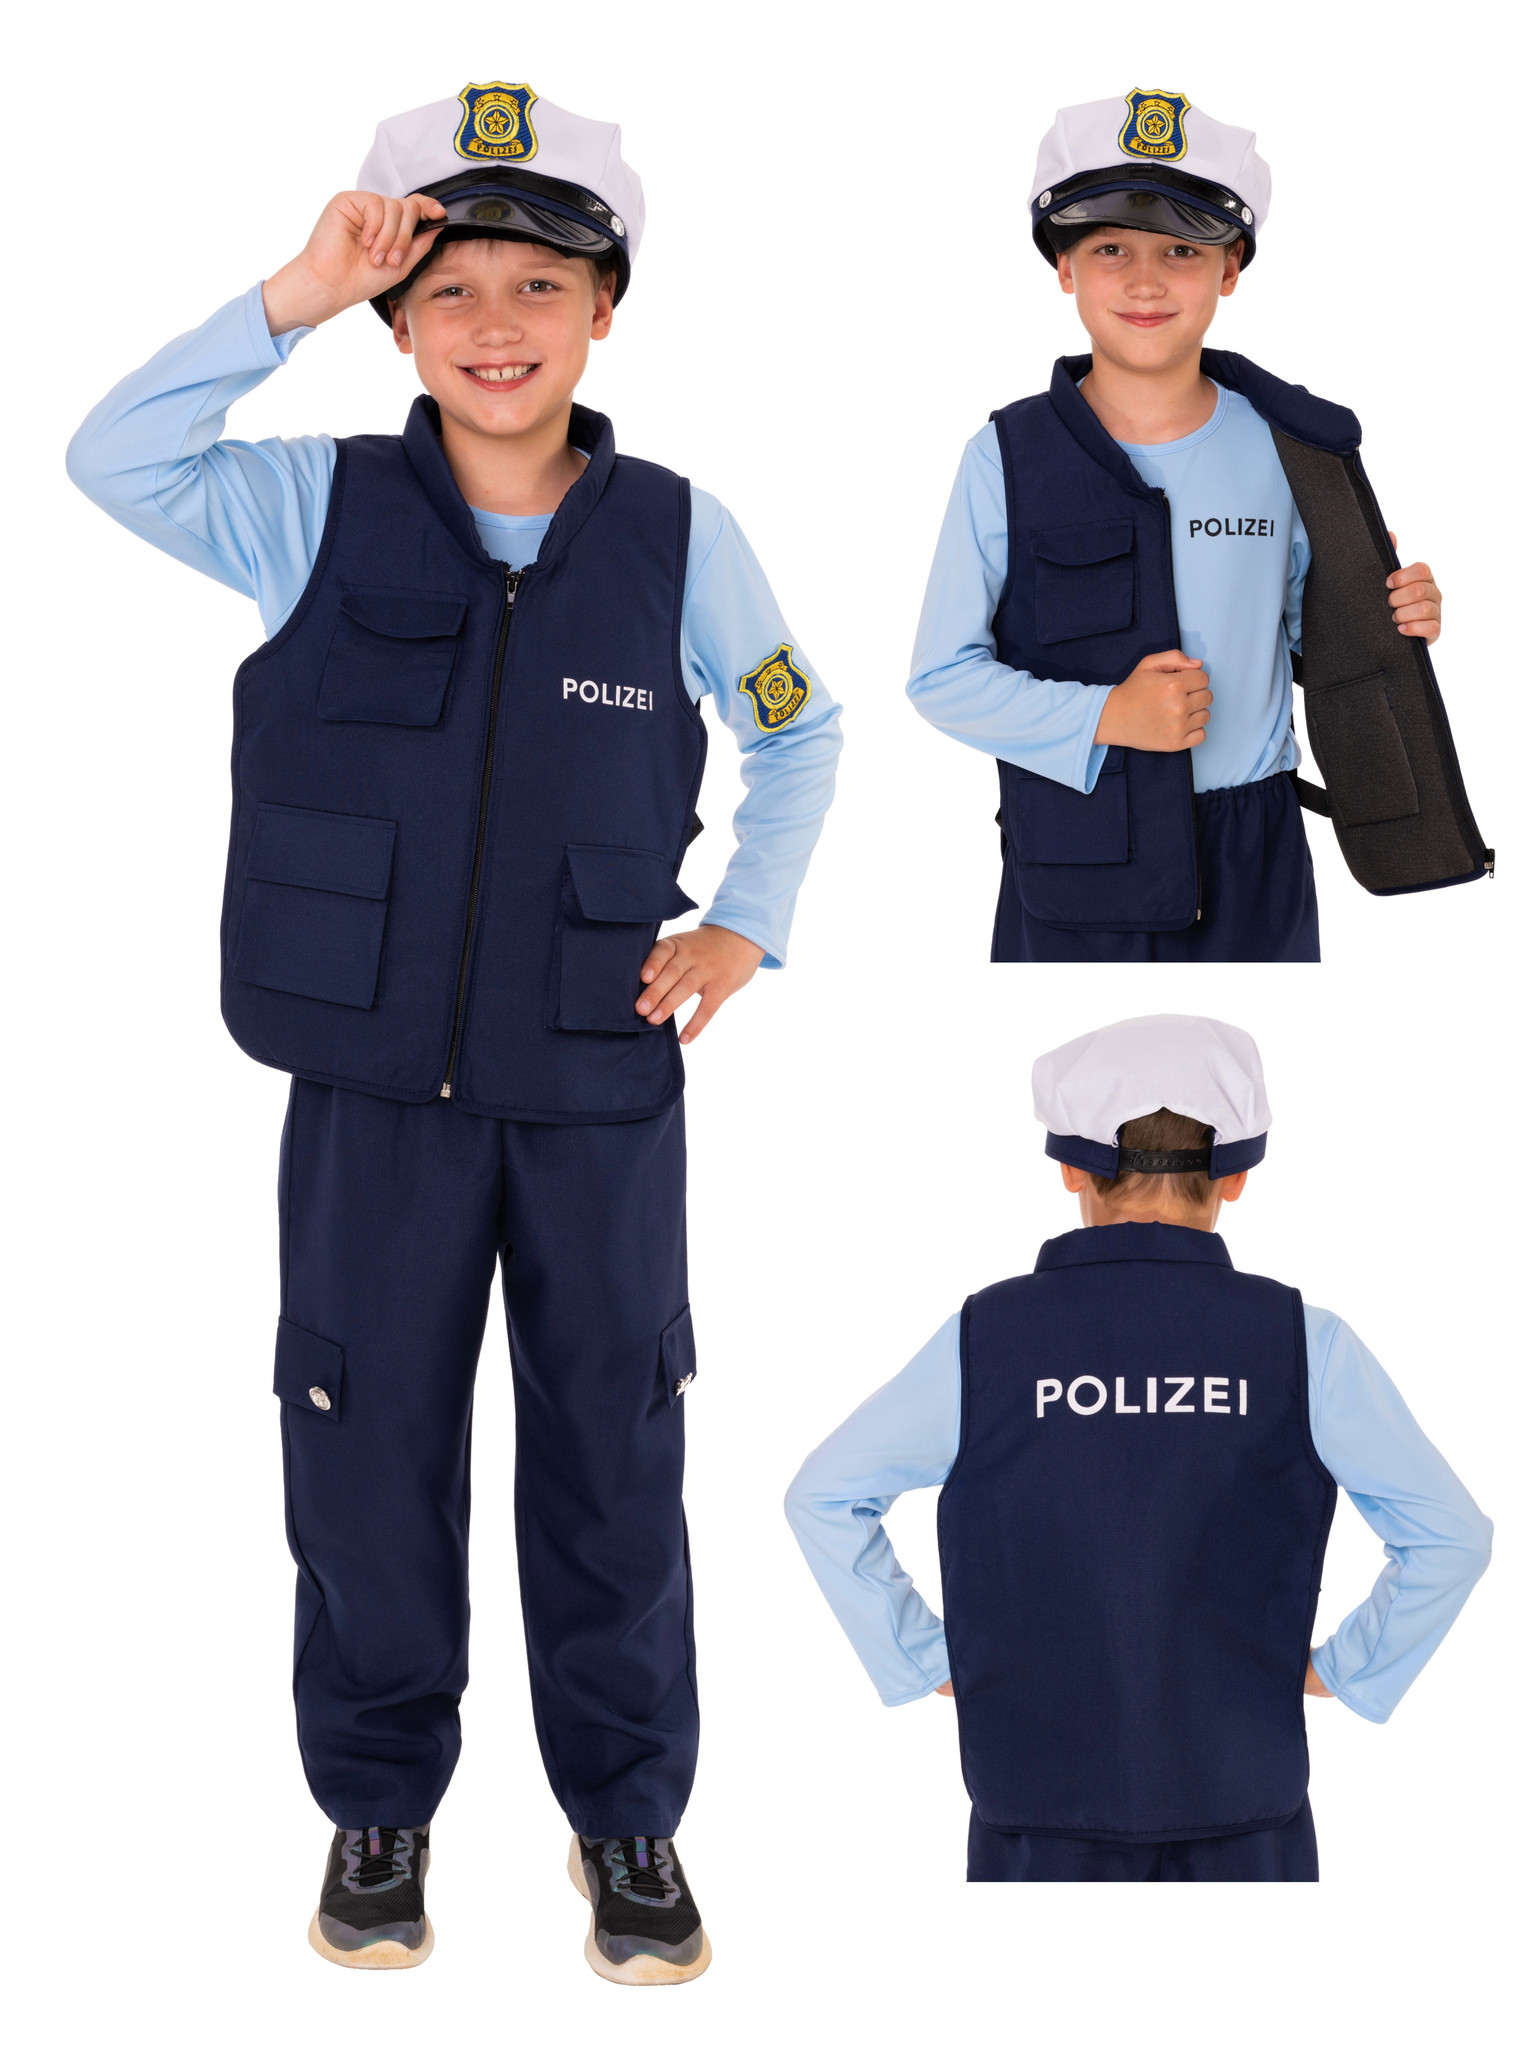 SEK Polizei Kostüm mit Schutzweste - Magicoo